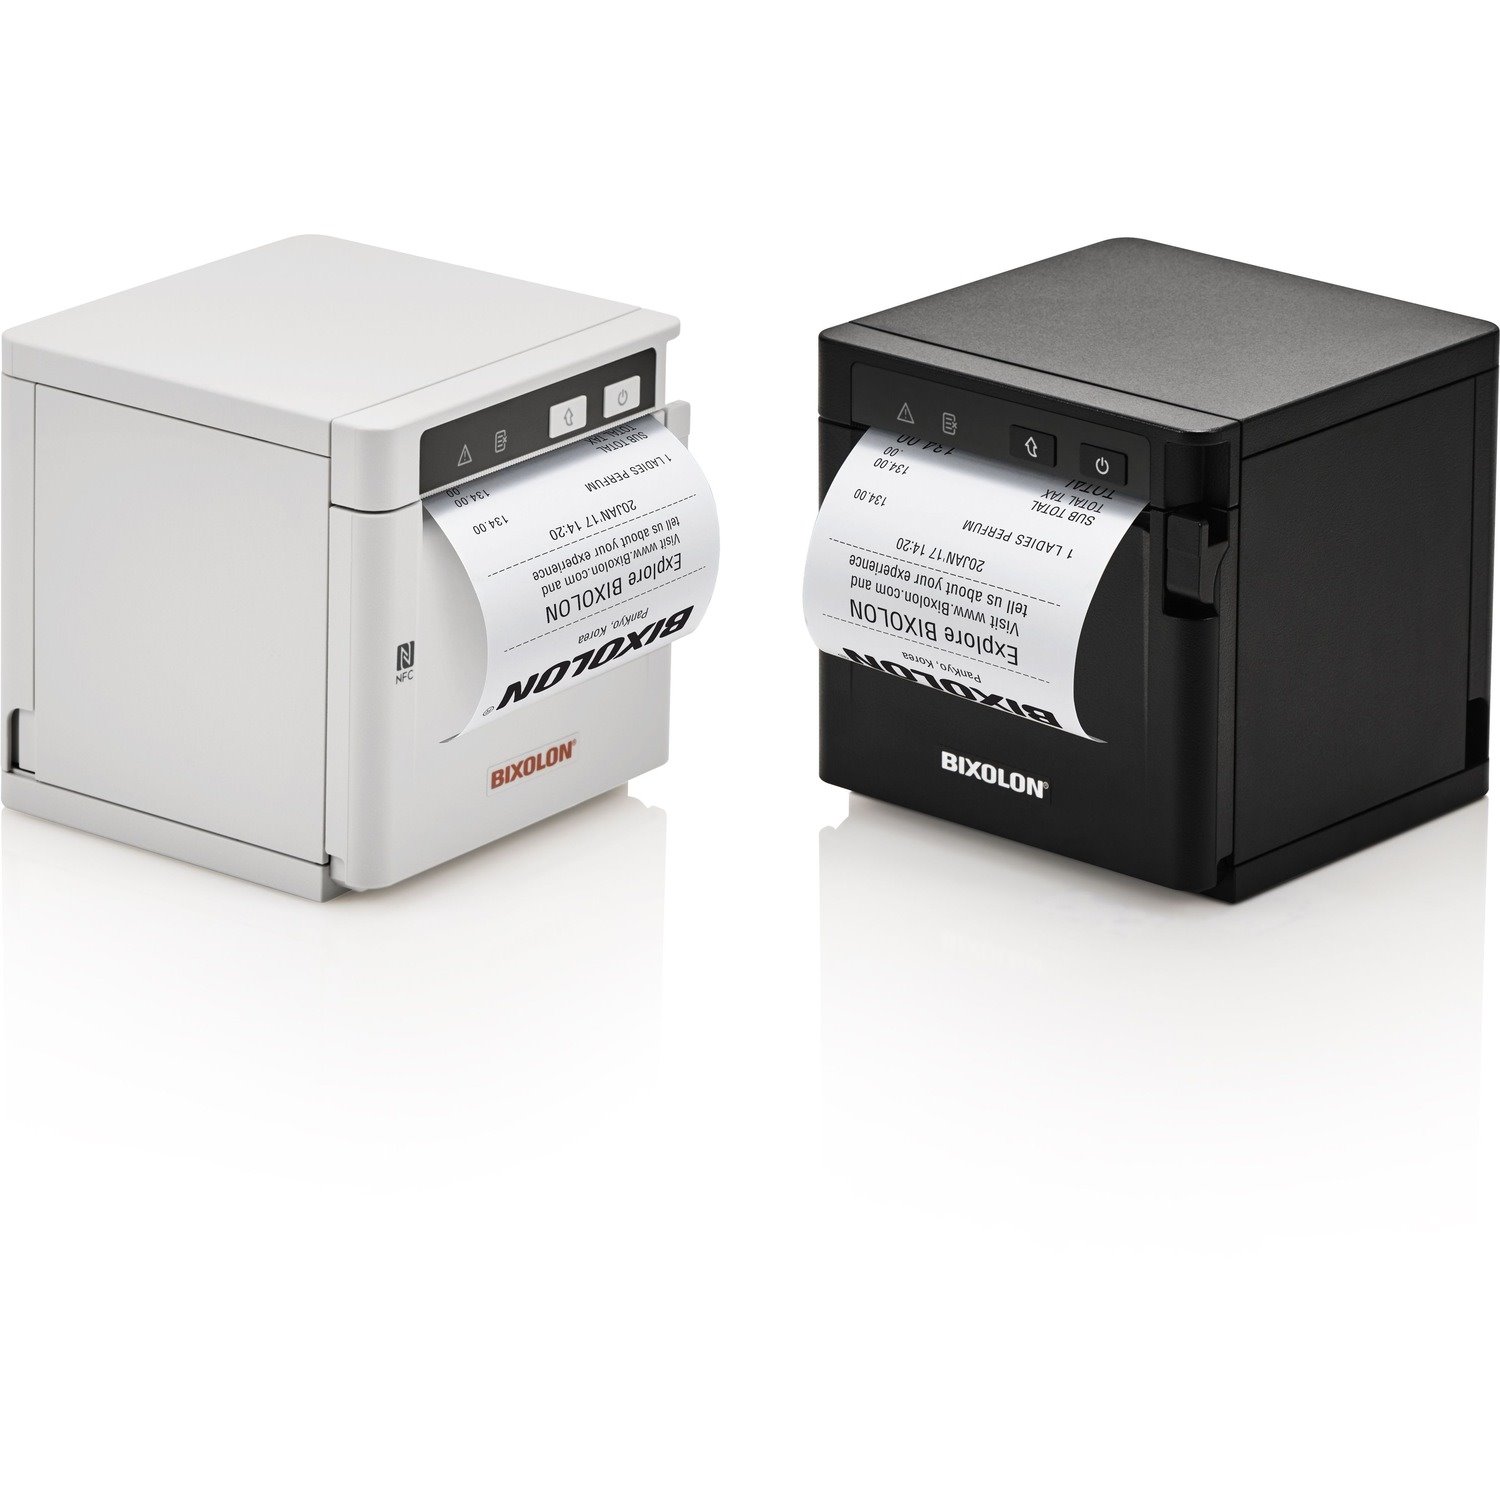 Bixolon SRP-Q302 Desktop Direct Thermal Printer - Monochrome - Receipt Print - USB - Wireless LAN